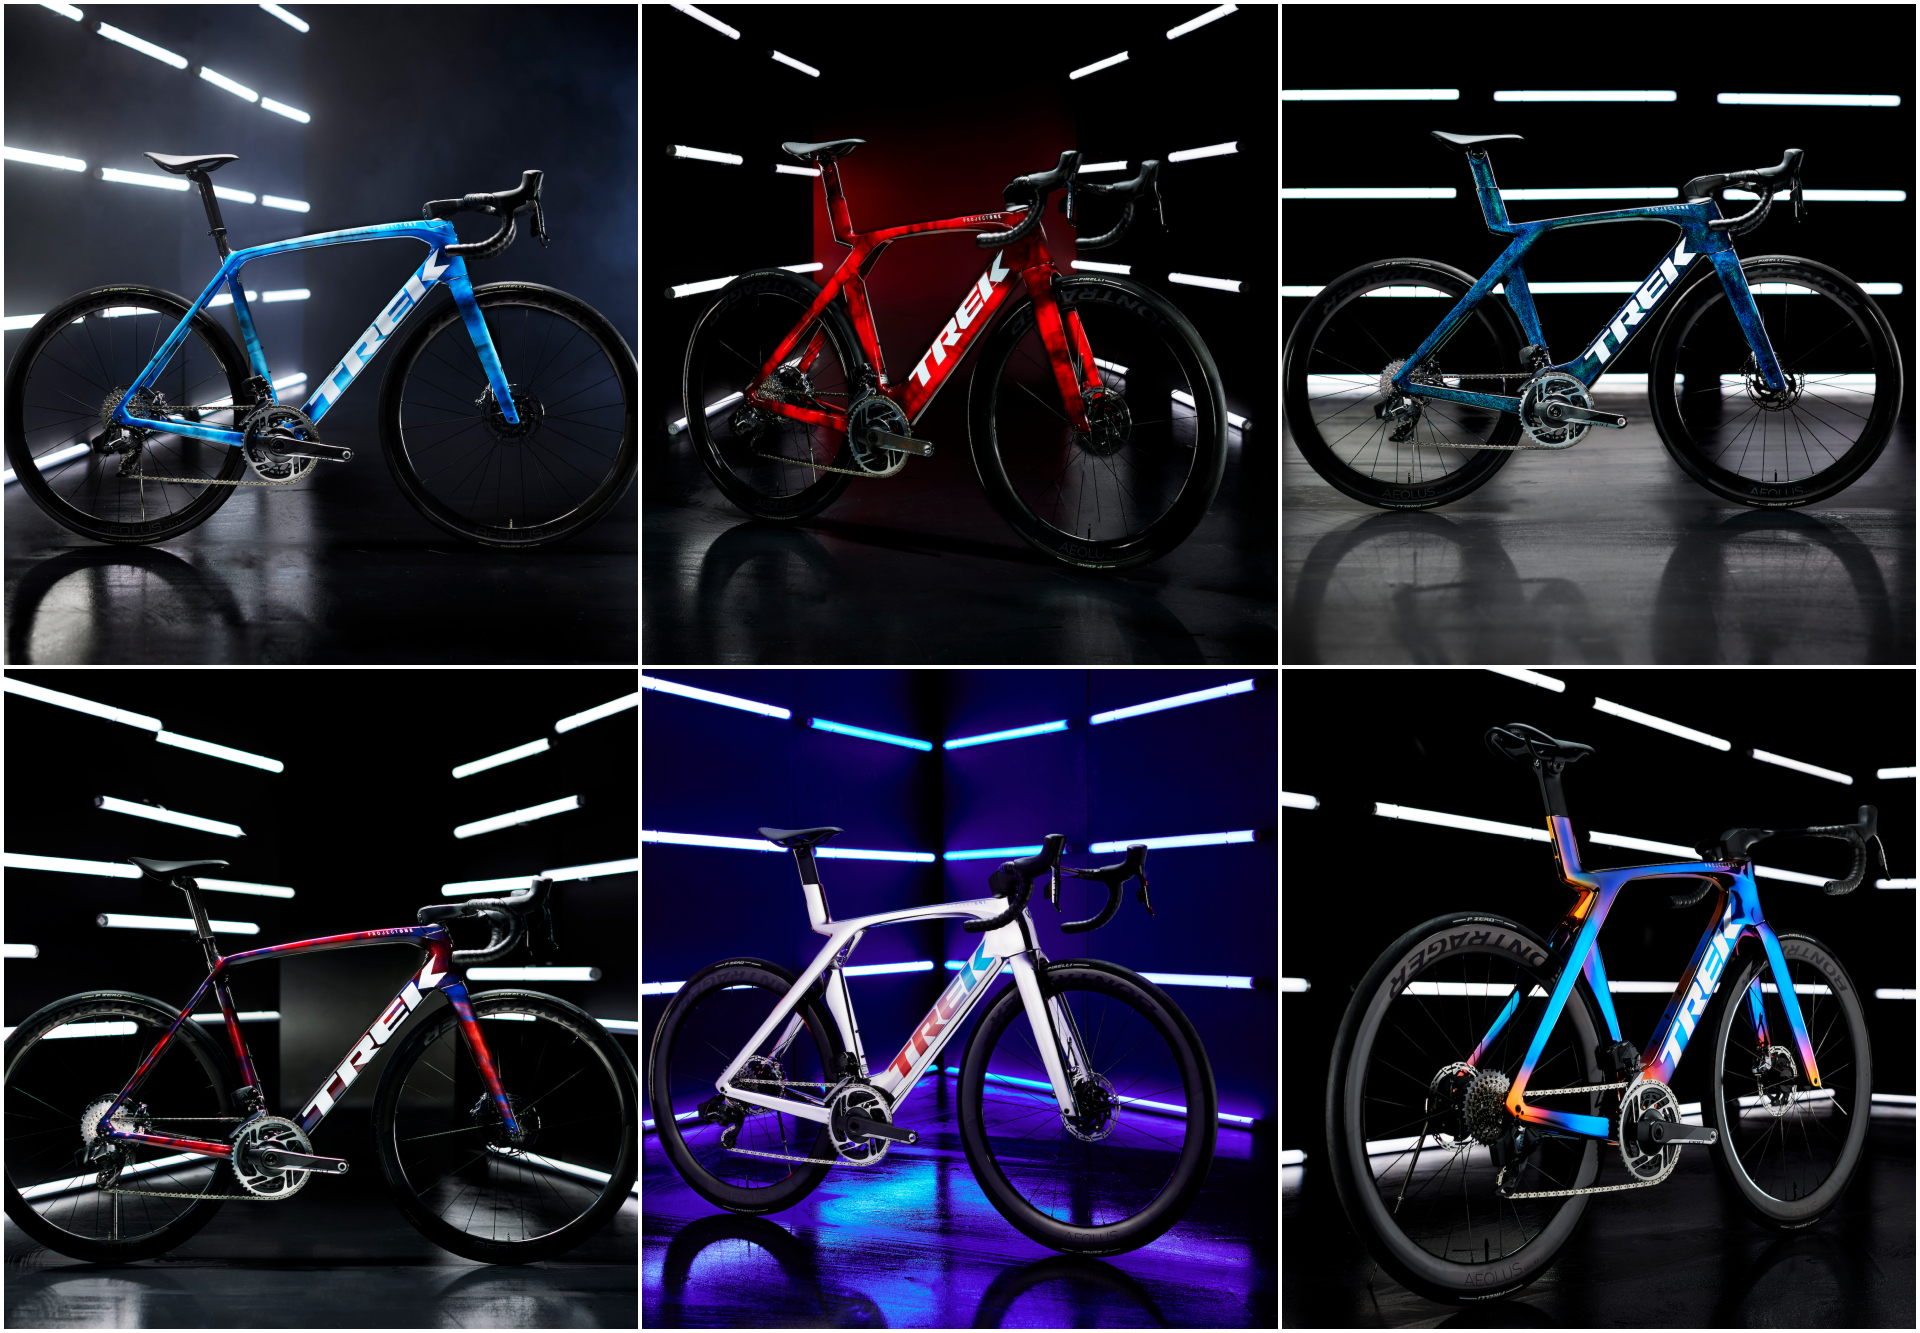 Are Lidl-Trek's bikes the prettiest at the Tour de France